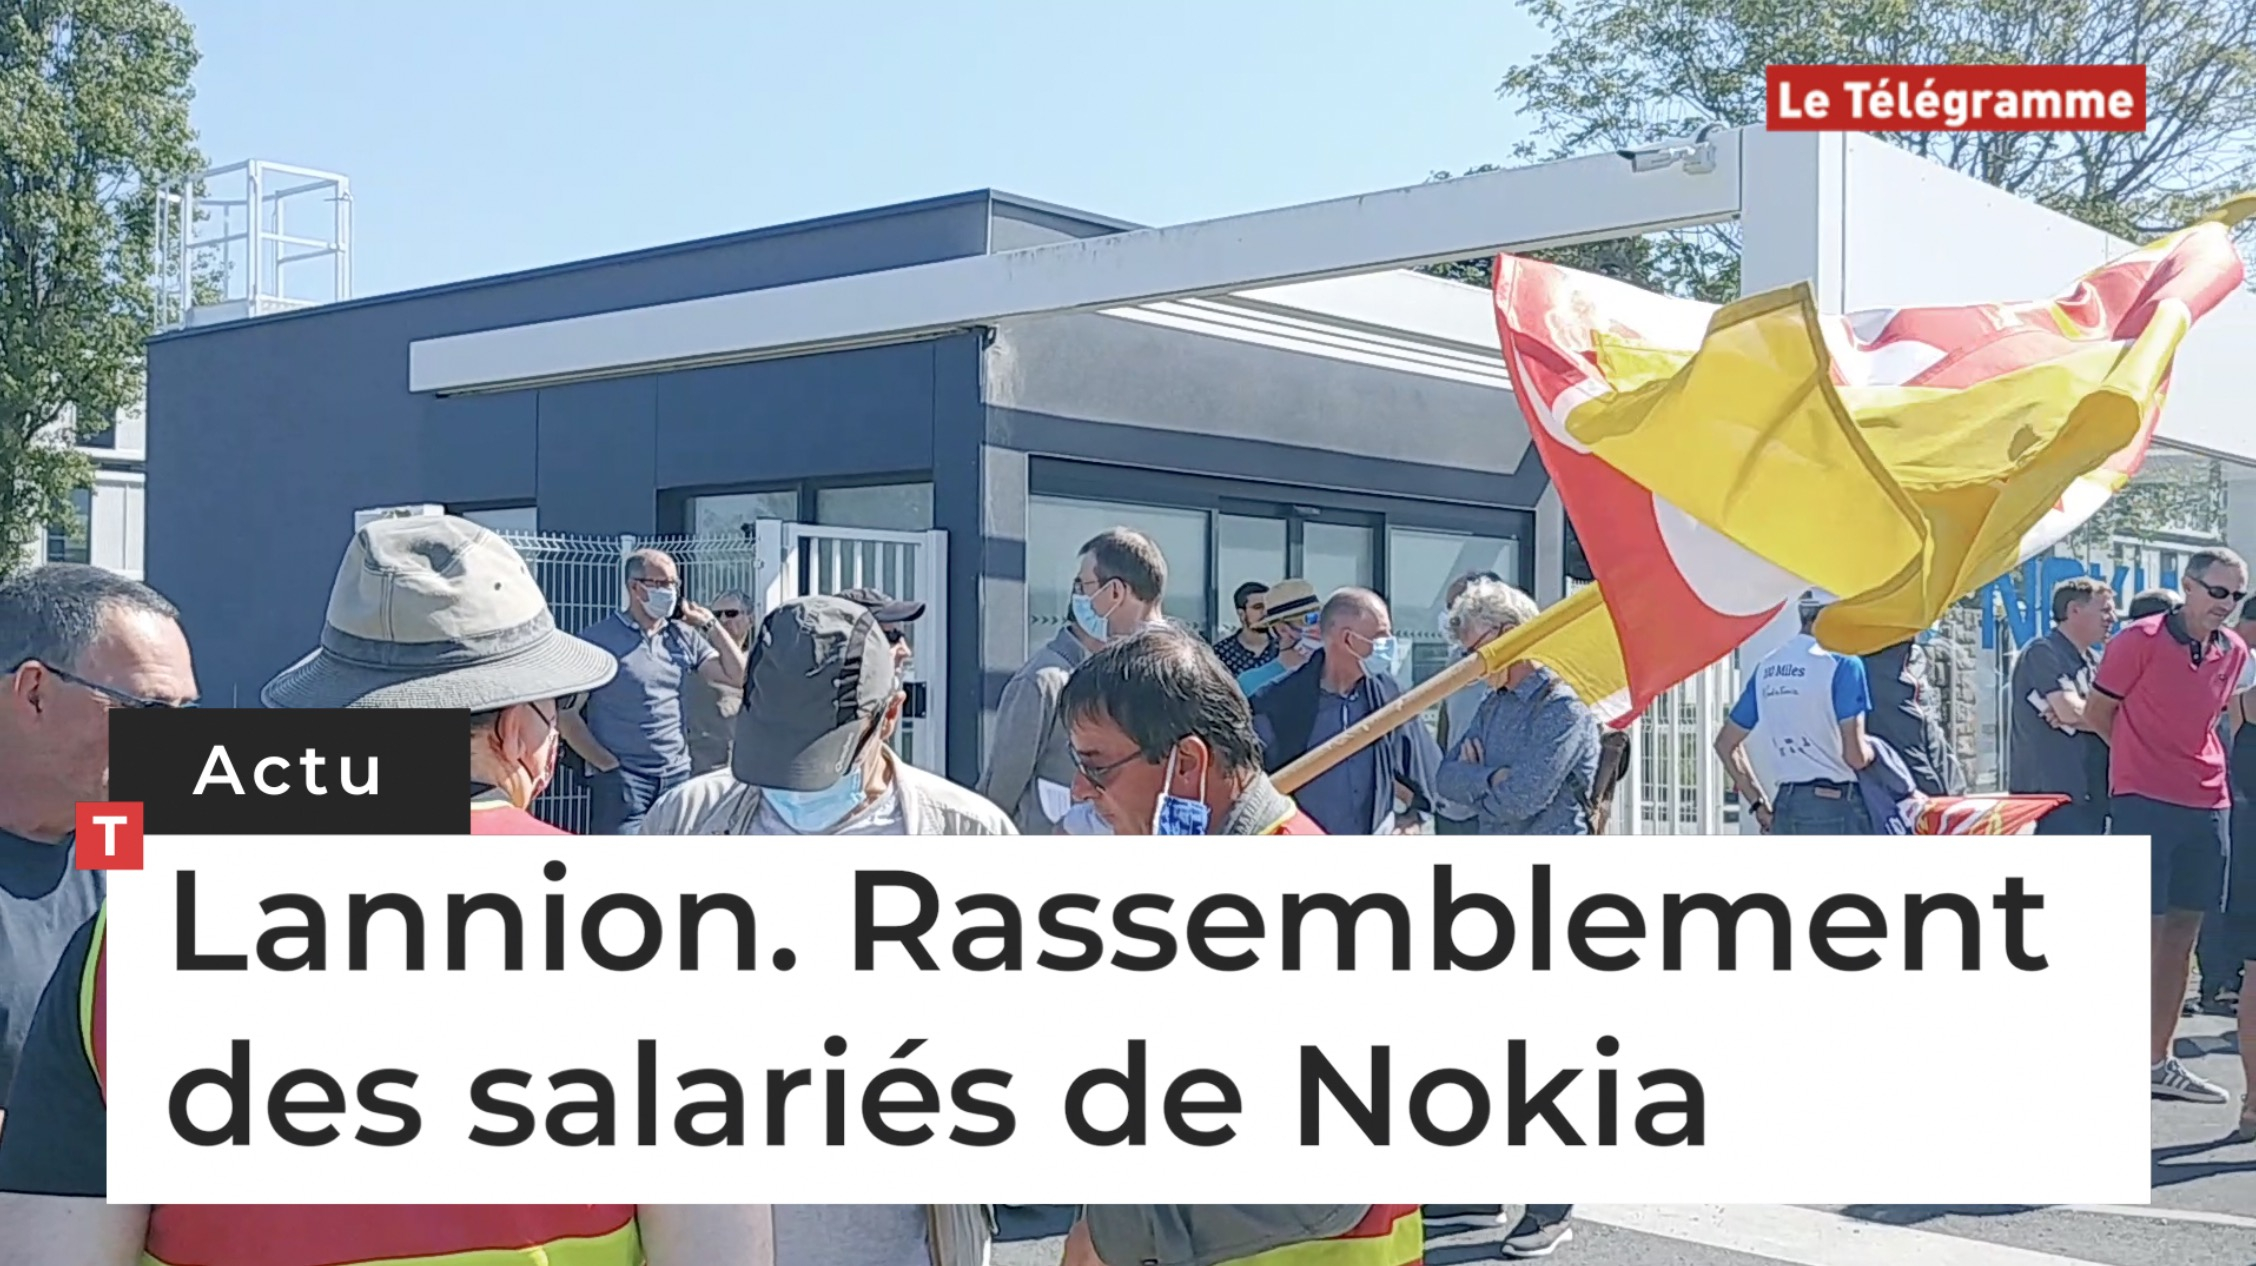 Lannion. Rassemblement des salariés de Nokia (Le Télégramme)